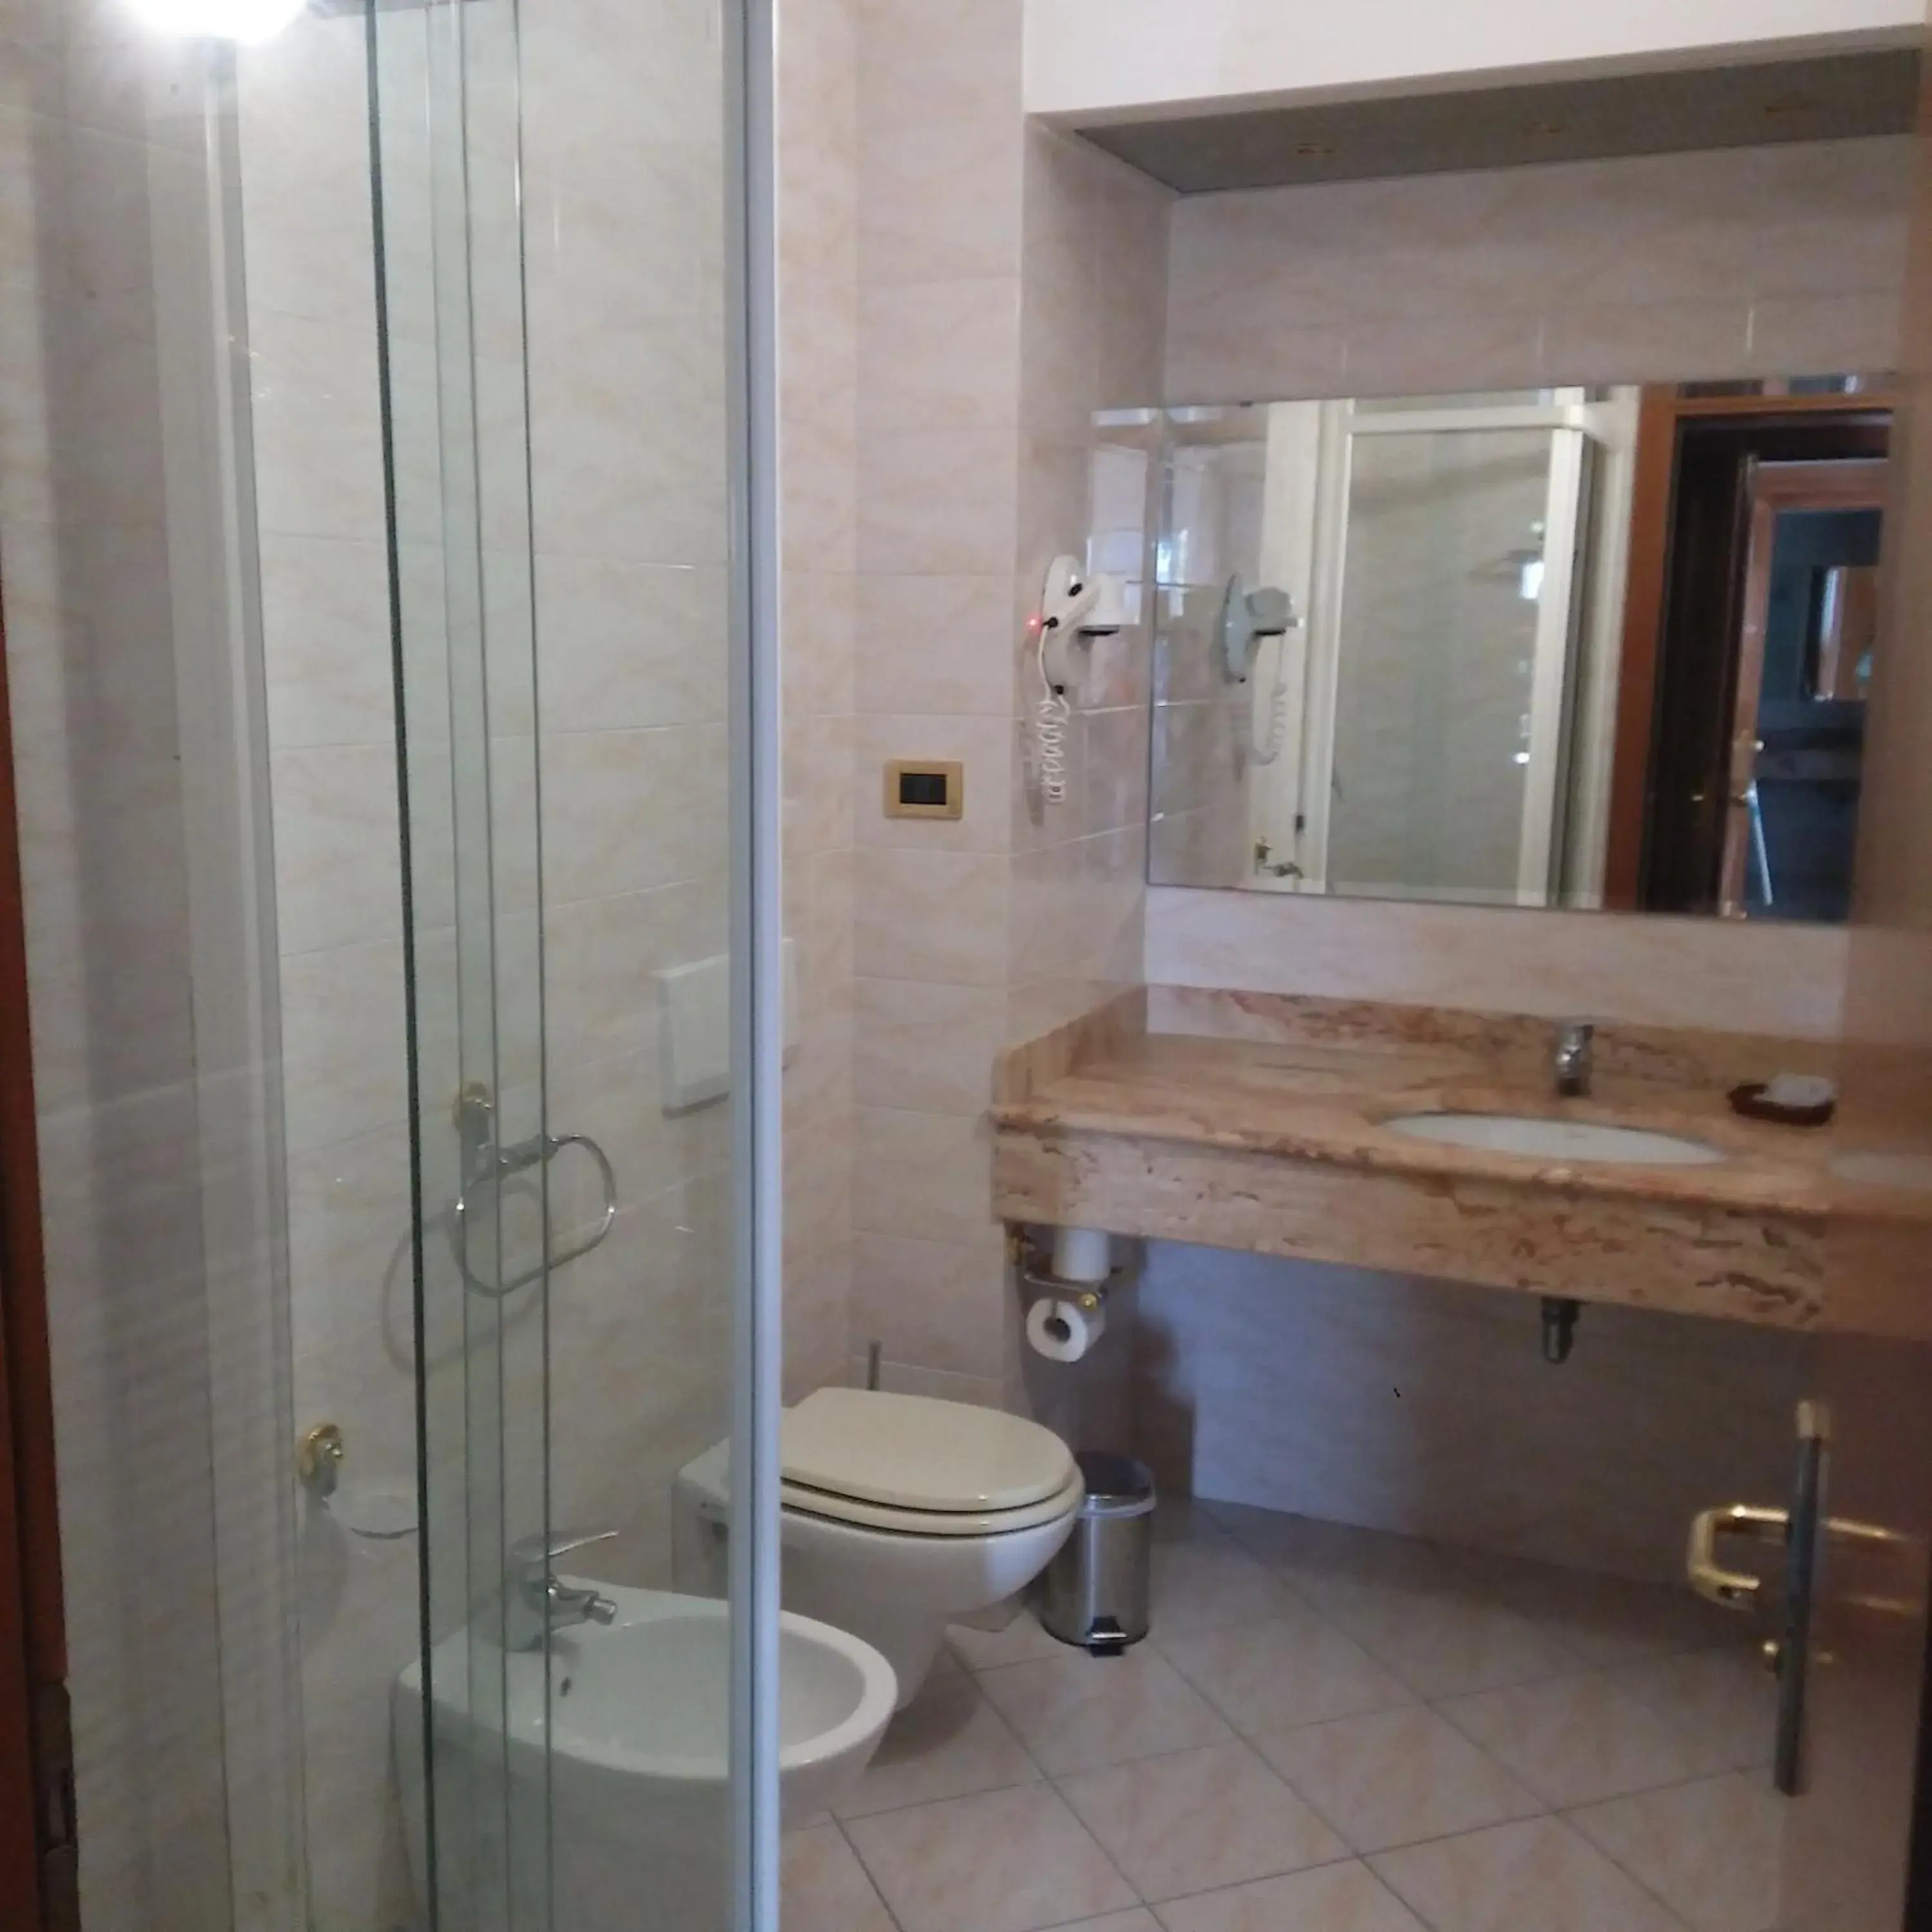 Bathroom in Hotel Principe